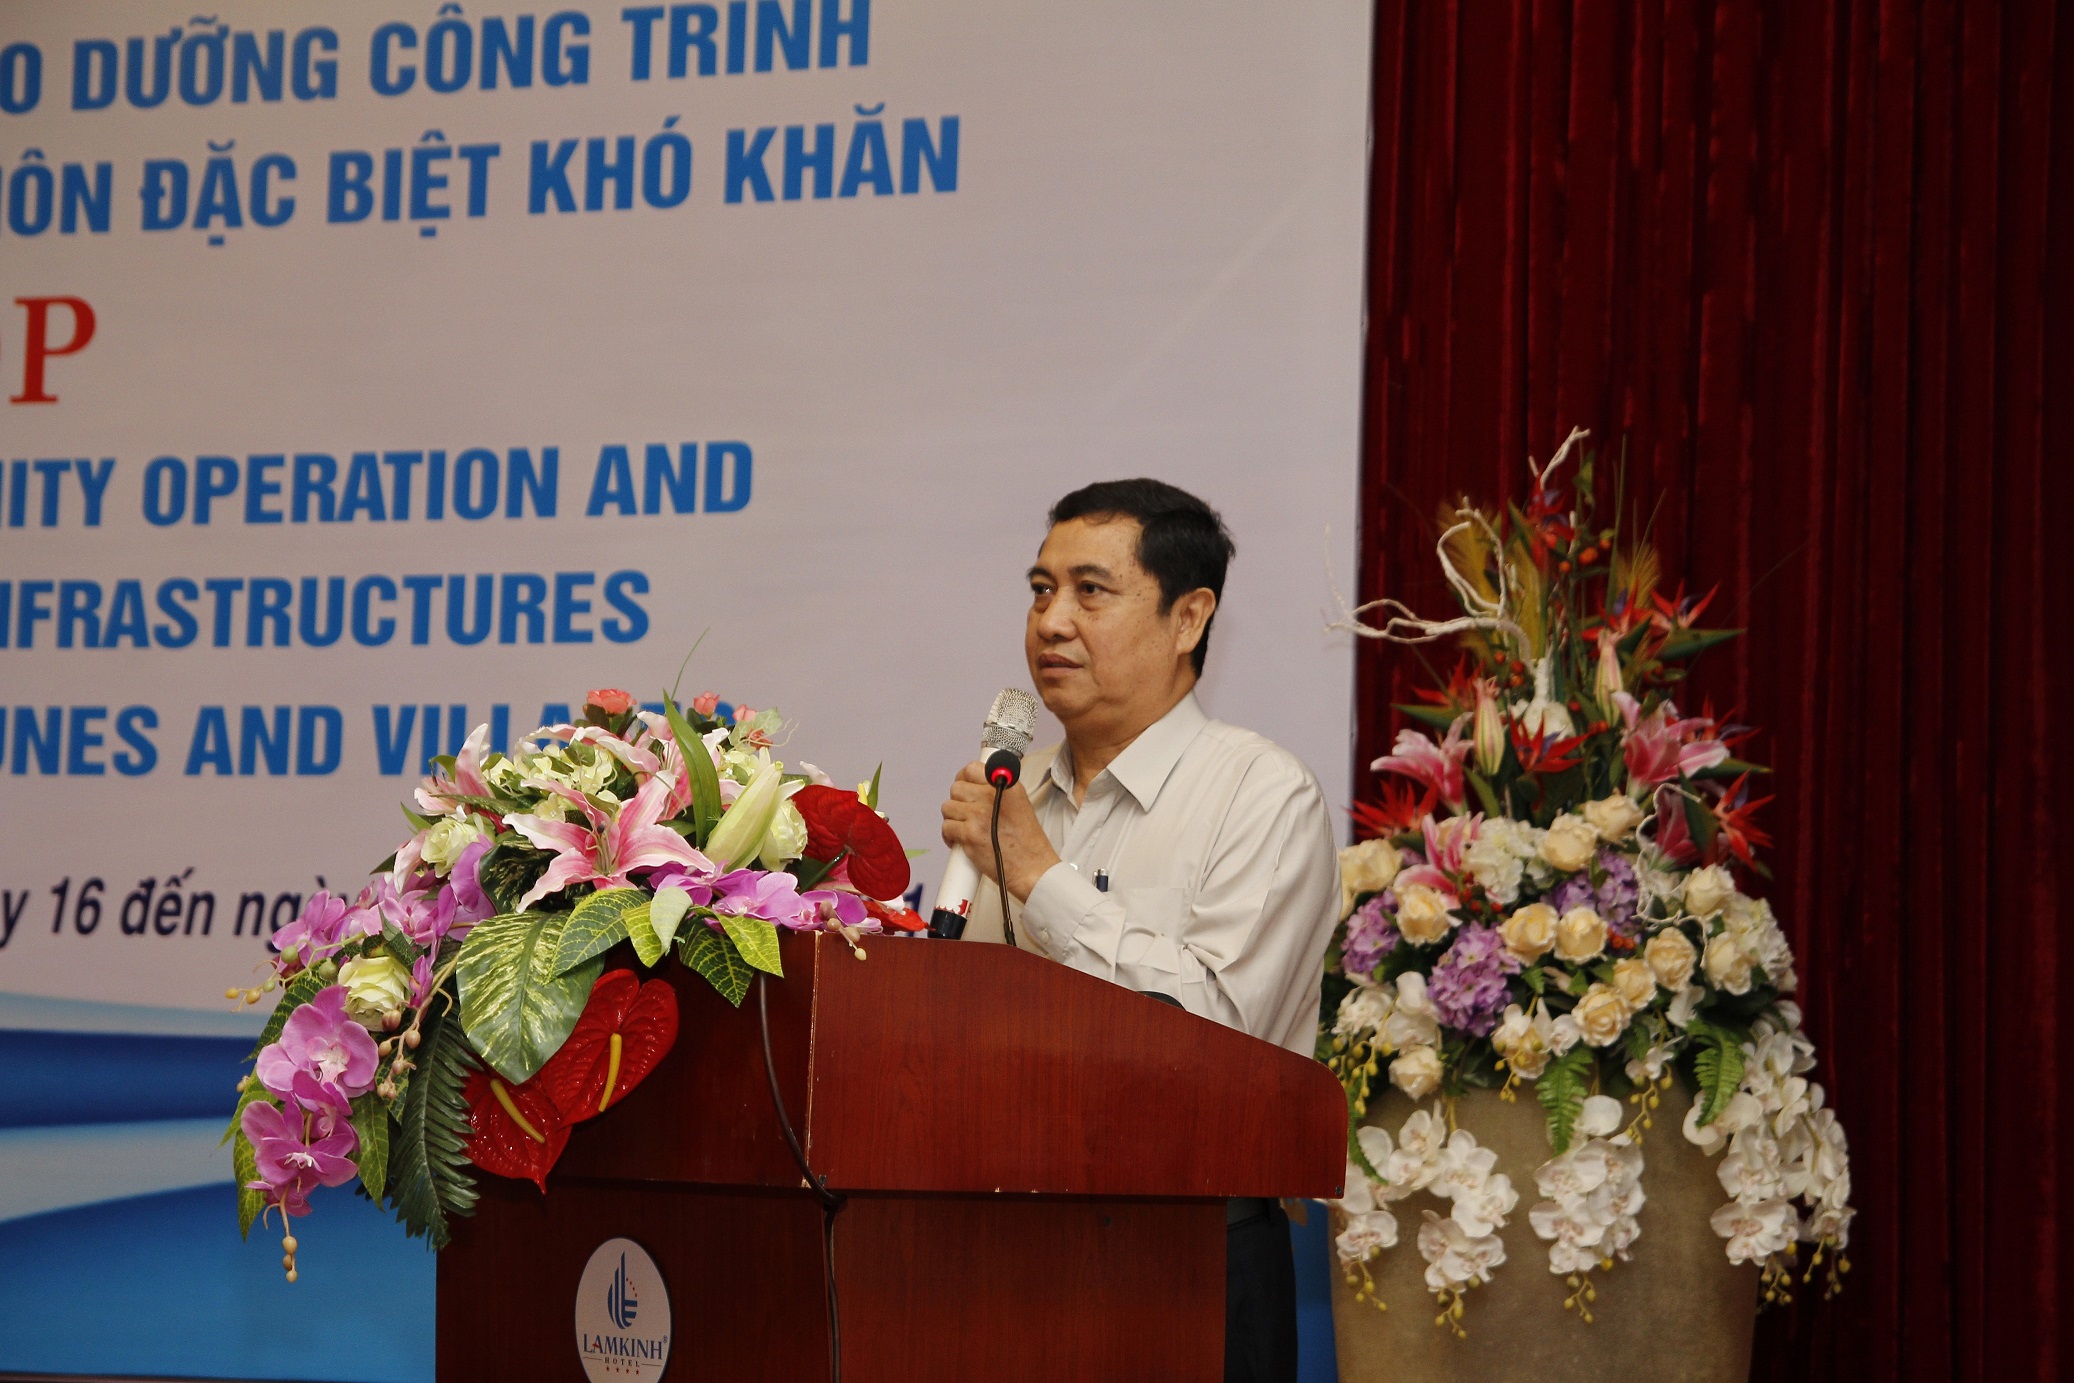 Thứ trưởng, Phó Chủ nhiệm Ủy ban Dân tộc Sơn Phước Hoan phát biểu tại Hội thảo chia sẻ kinh nghiệm về duy tu bảo dưỡng công trình 135